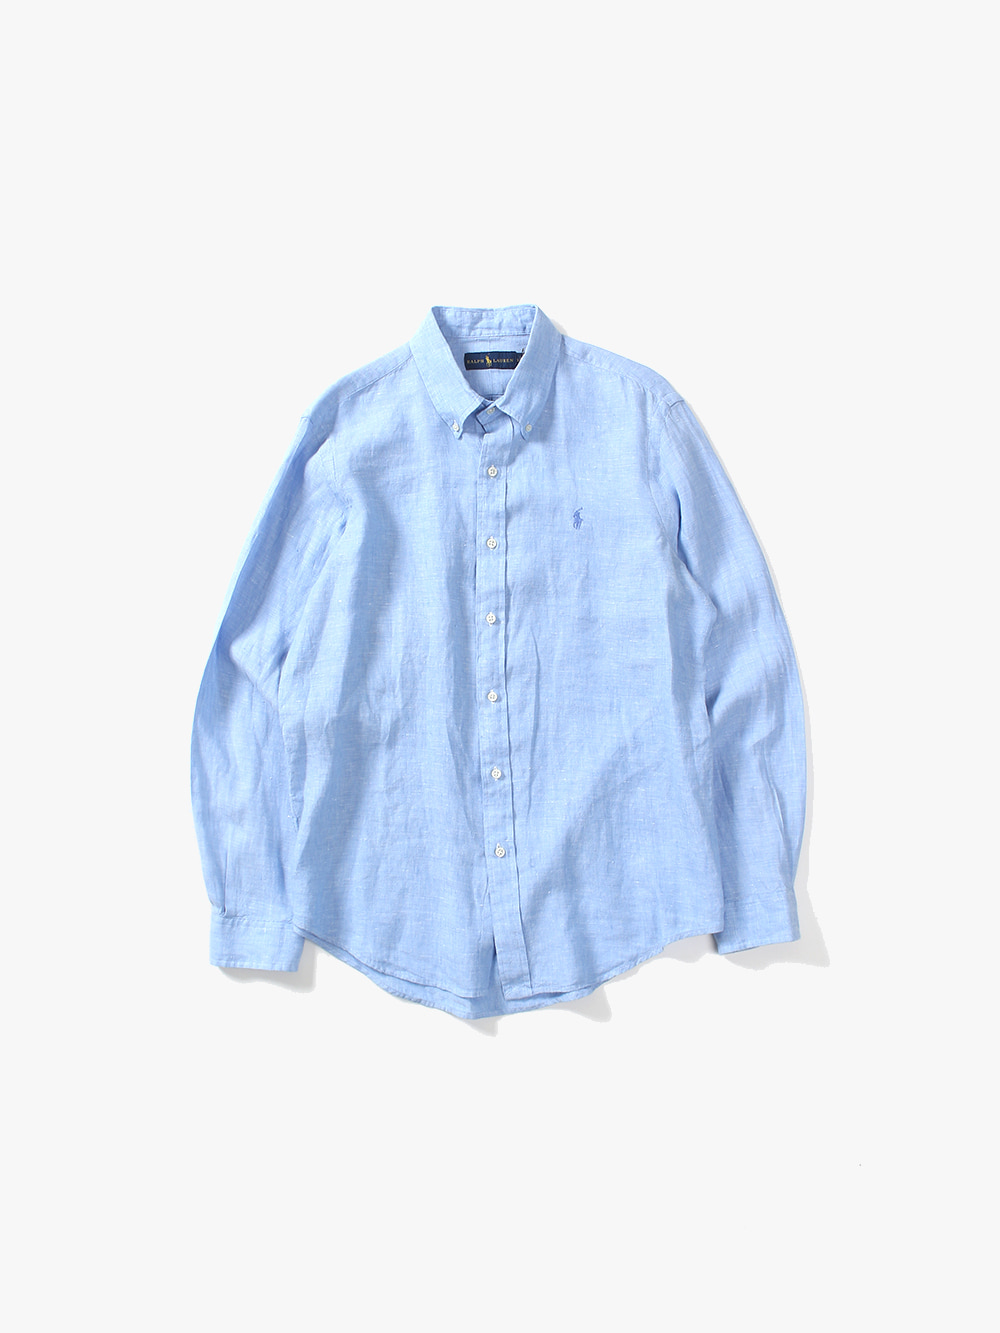 [ L ] Polo Ralph Lauren Shirt (6169)